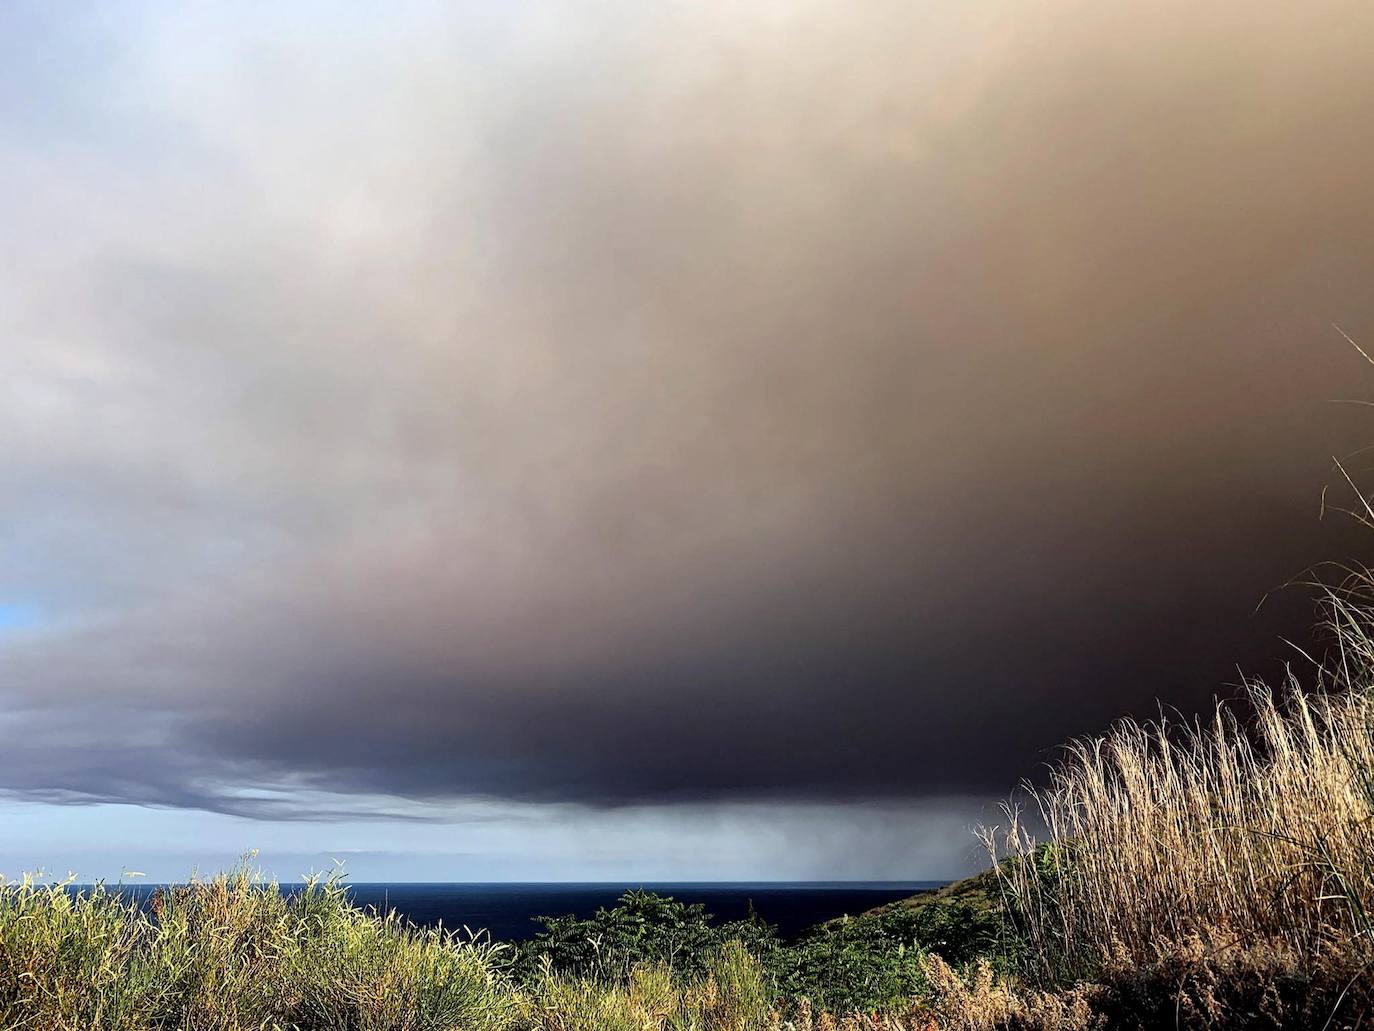 Fotos: El volcán Stromboli entra en erupción